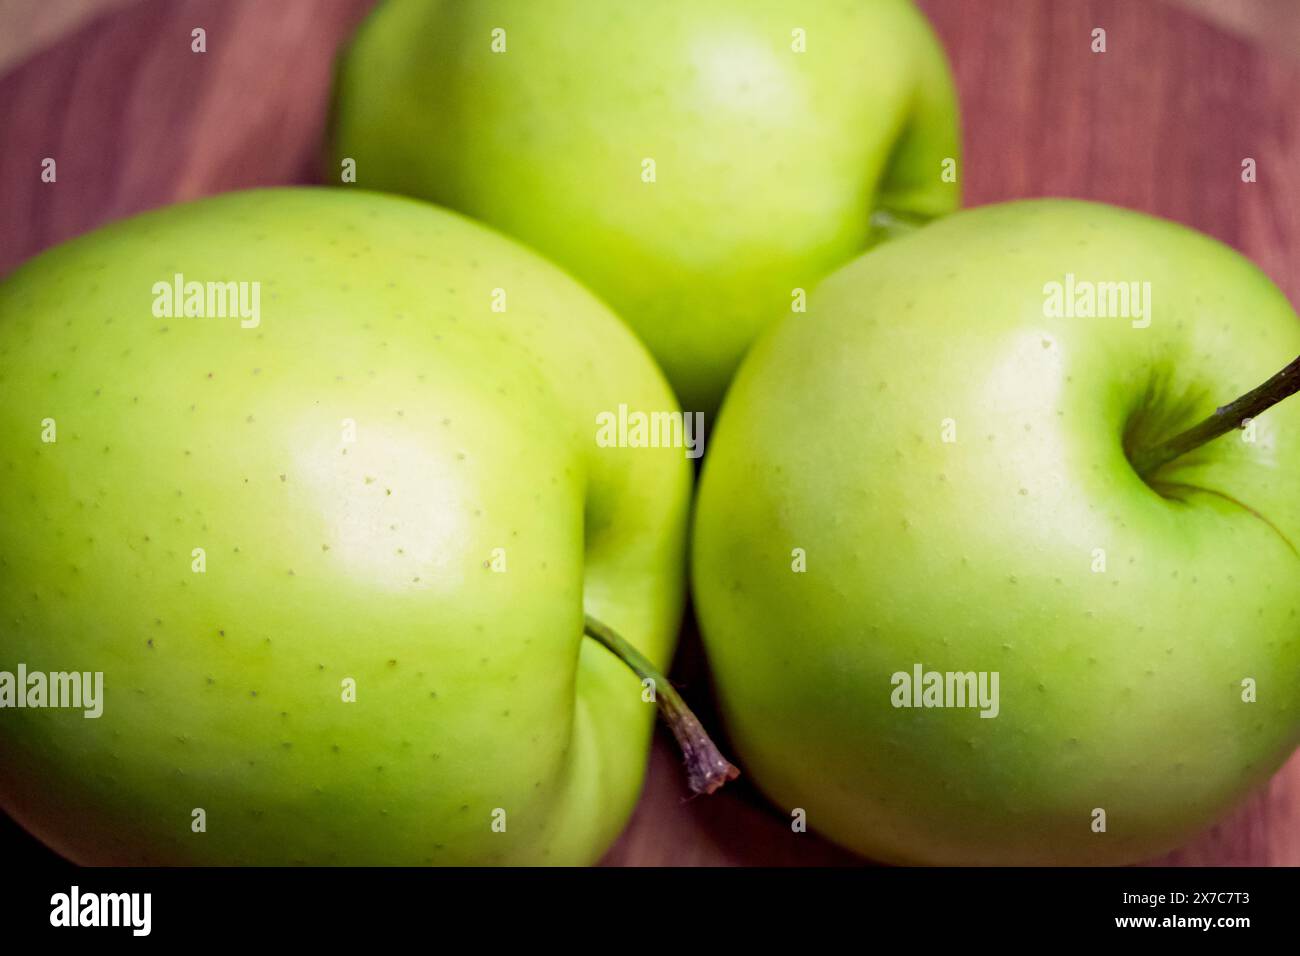 Mele verdi, vibranti e fresche, dominano questa immagine, adatta per materiali educativi su un'alimentazione sana. Foto Stock